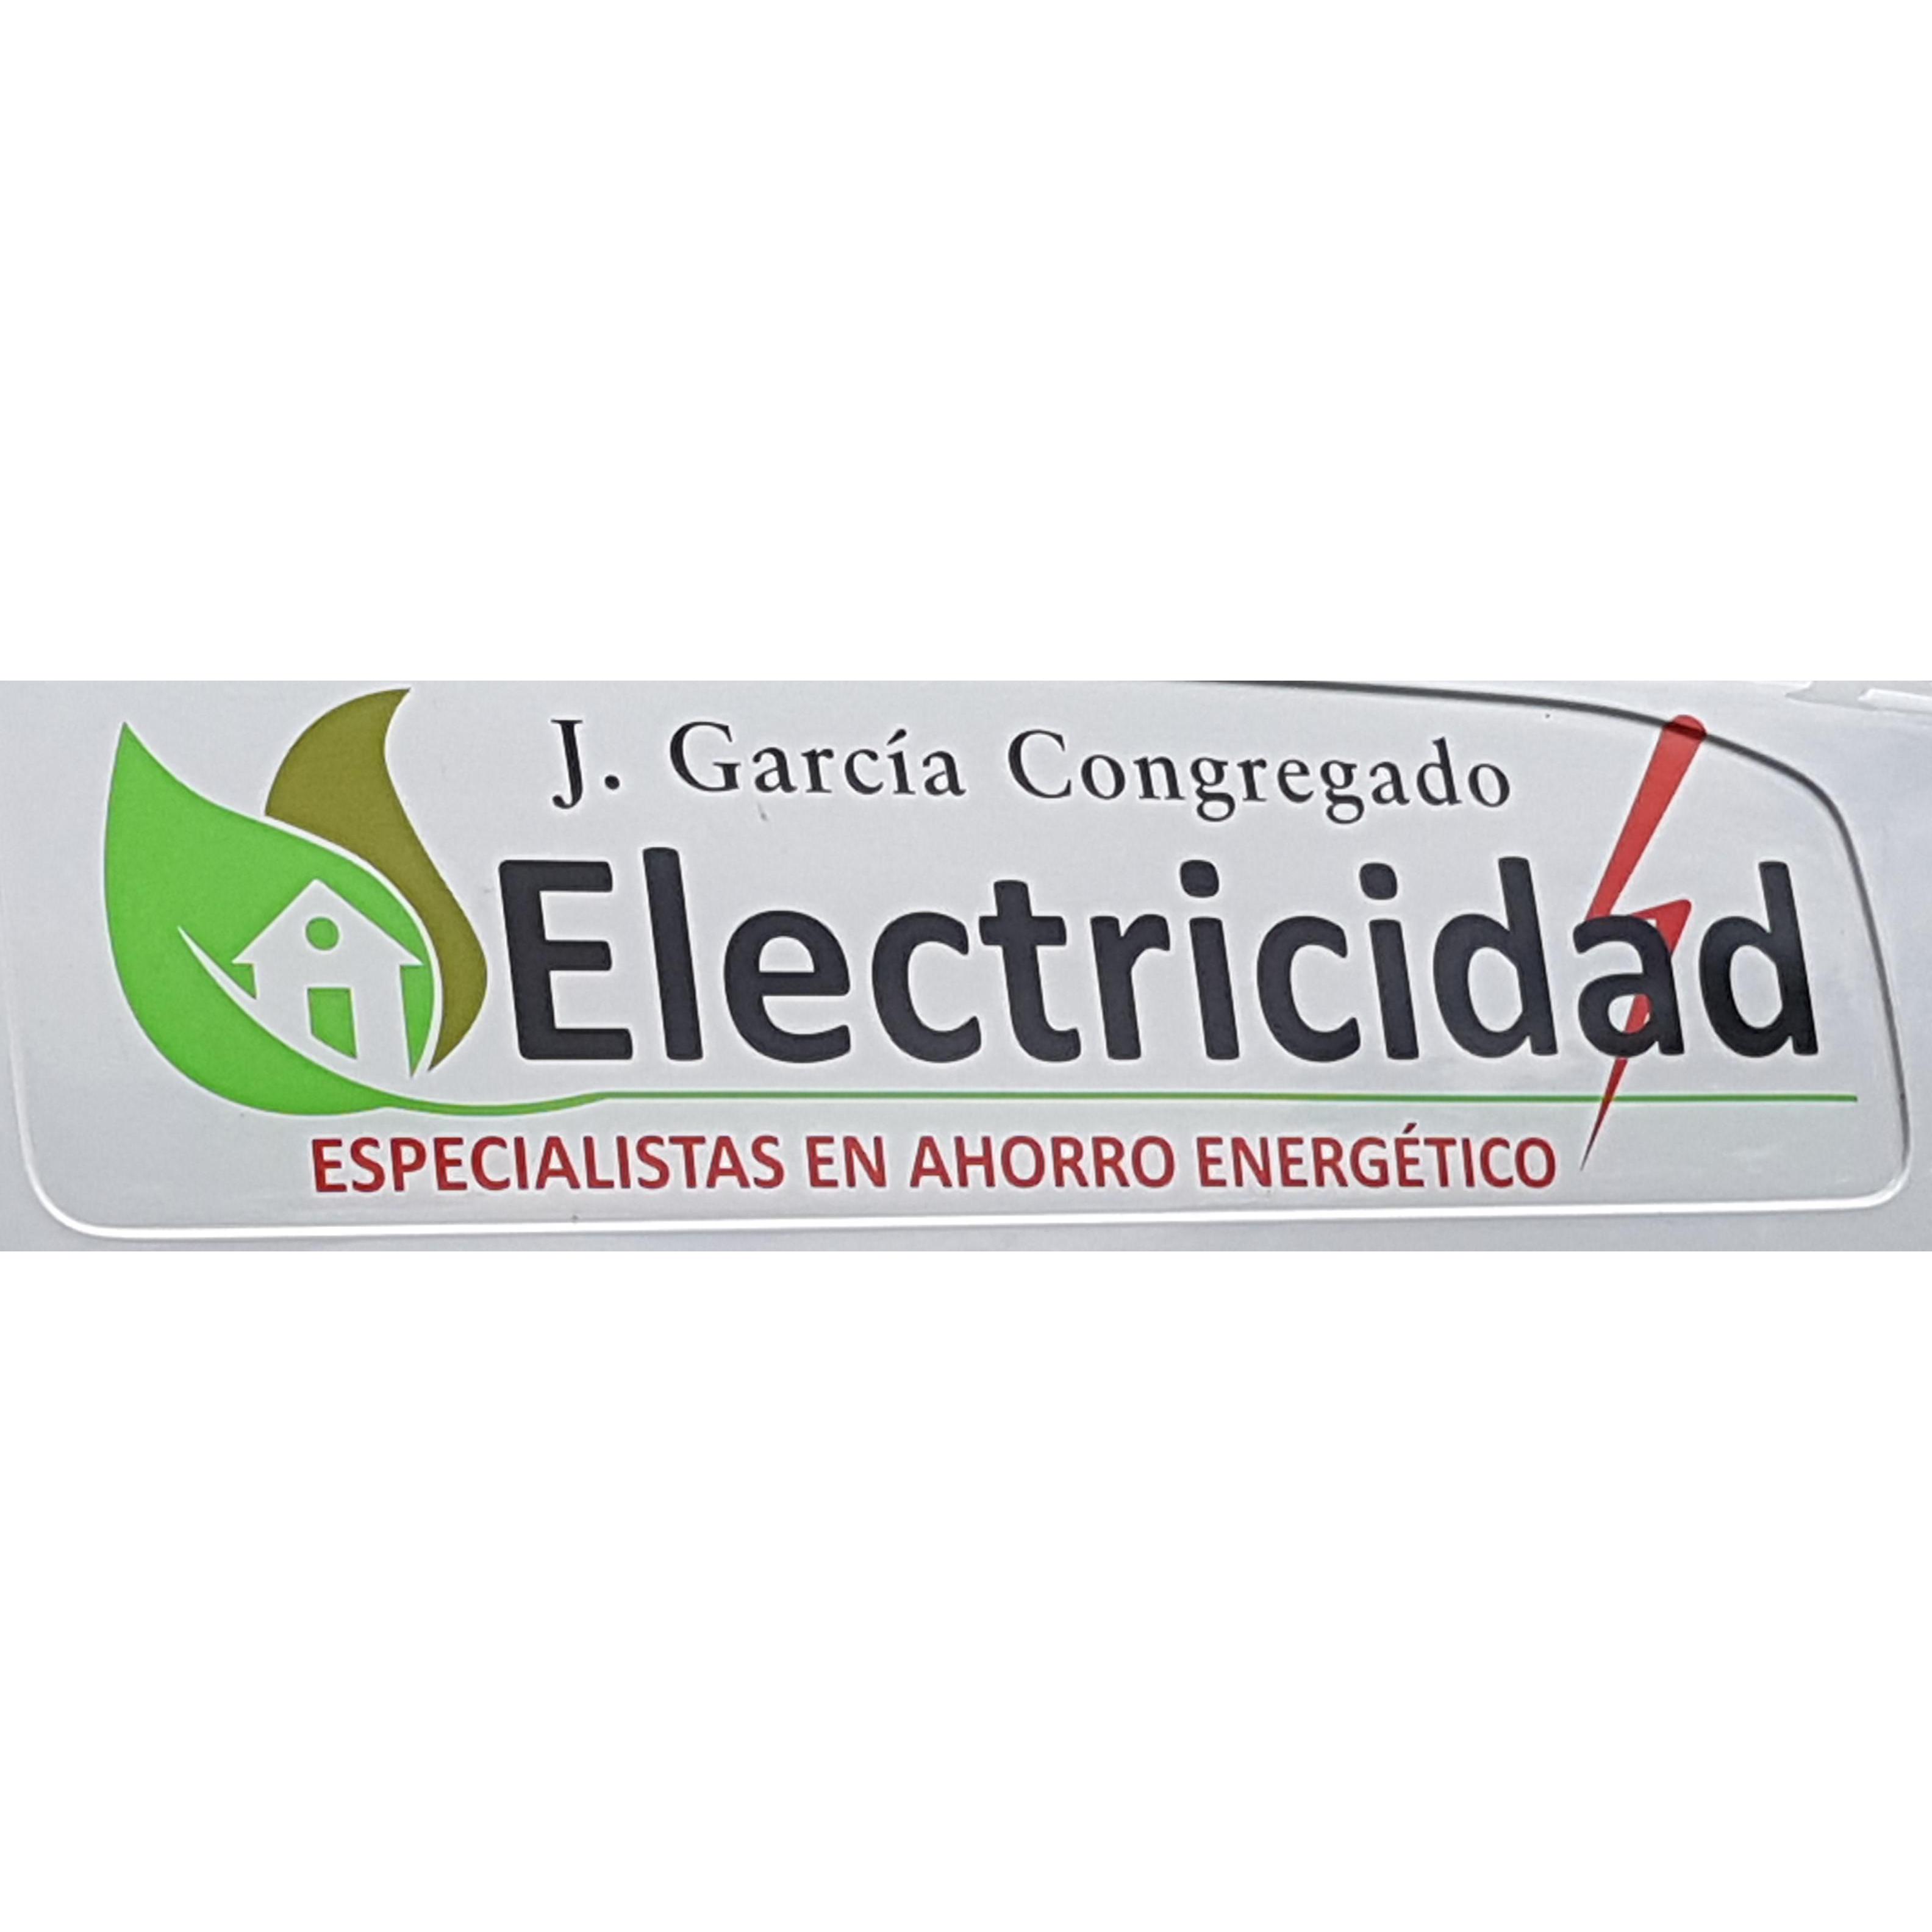 Electricidad Garcia Congregado Logo